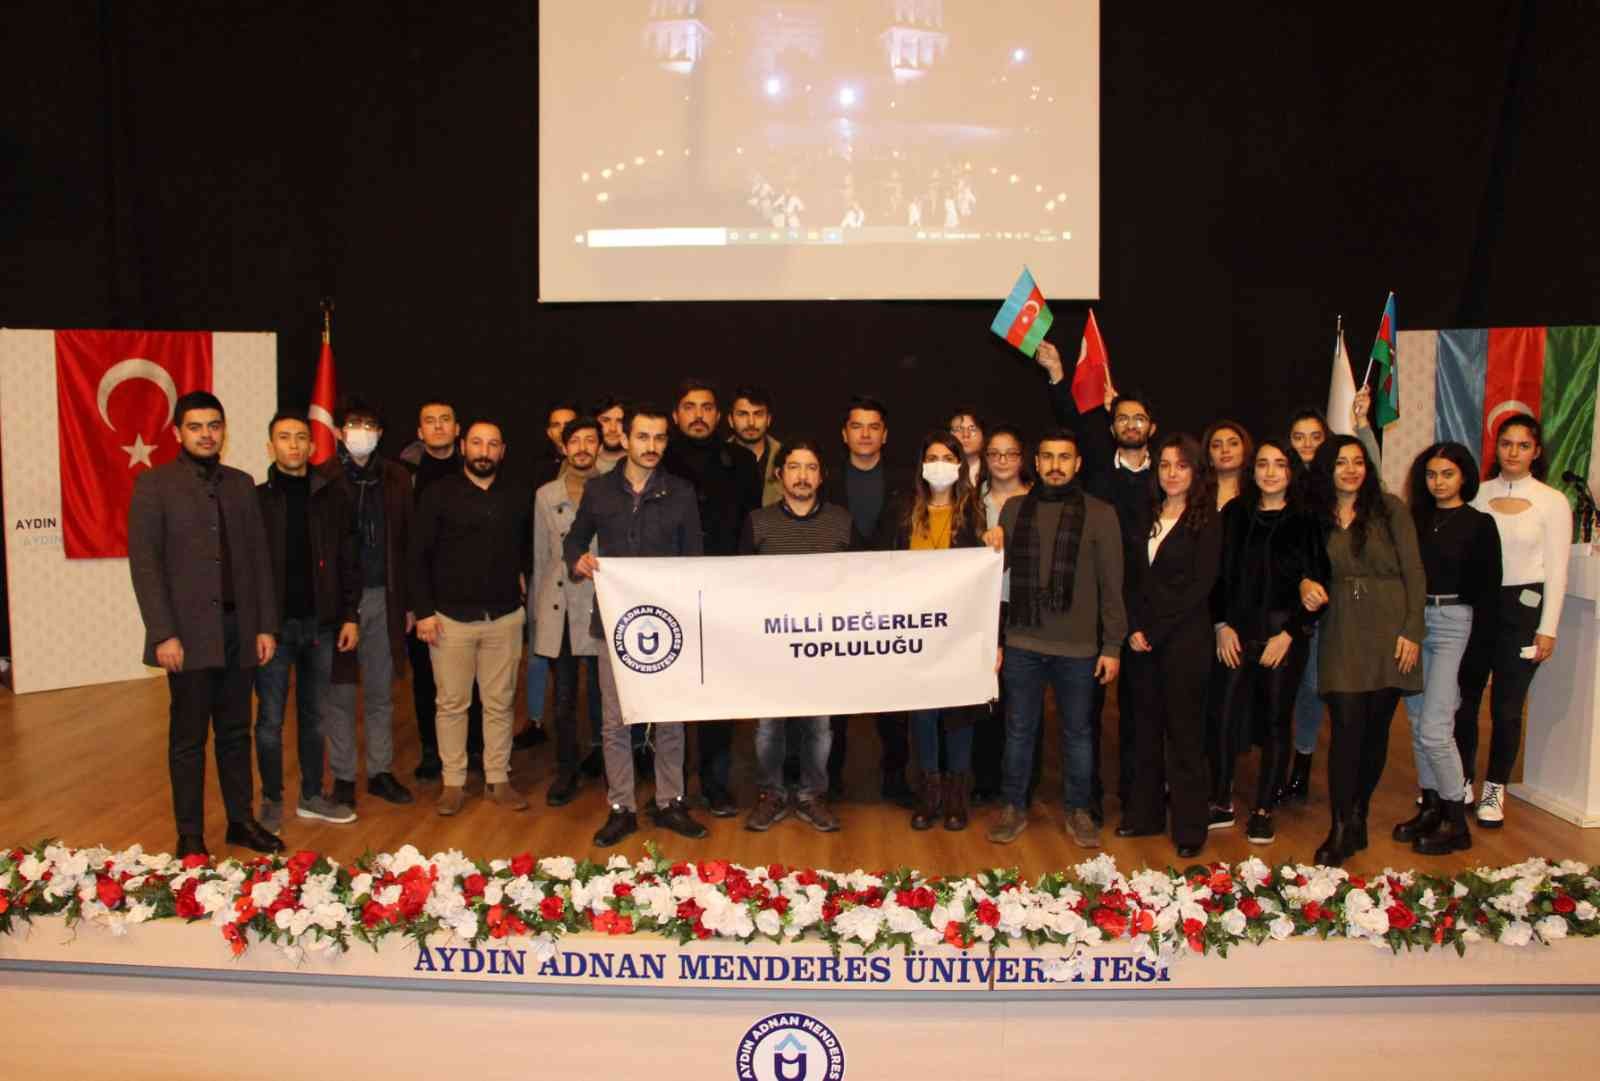 Dünya Azerbaycanlıların Dayanışma Günü etkinliği düzenlendi #aydin